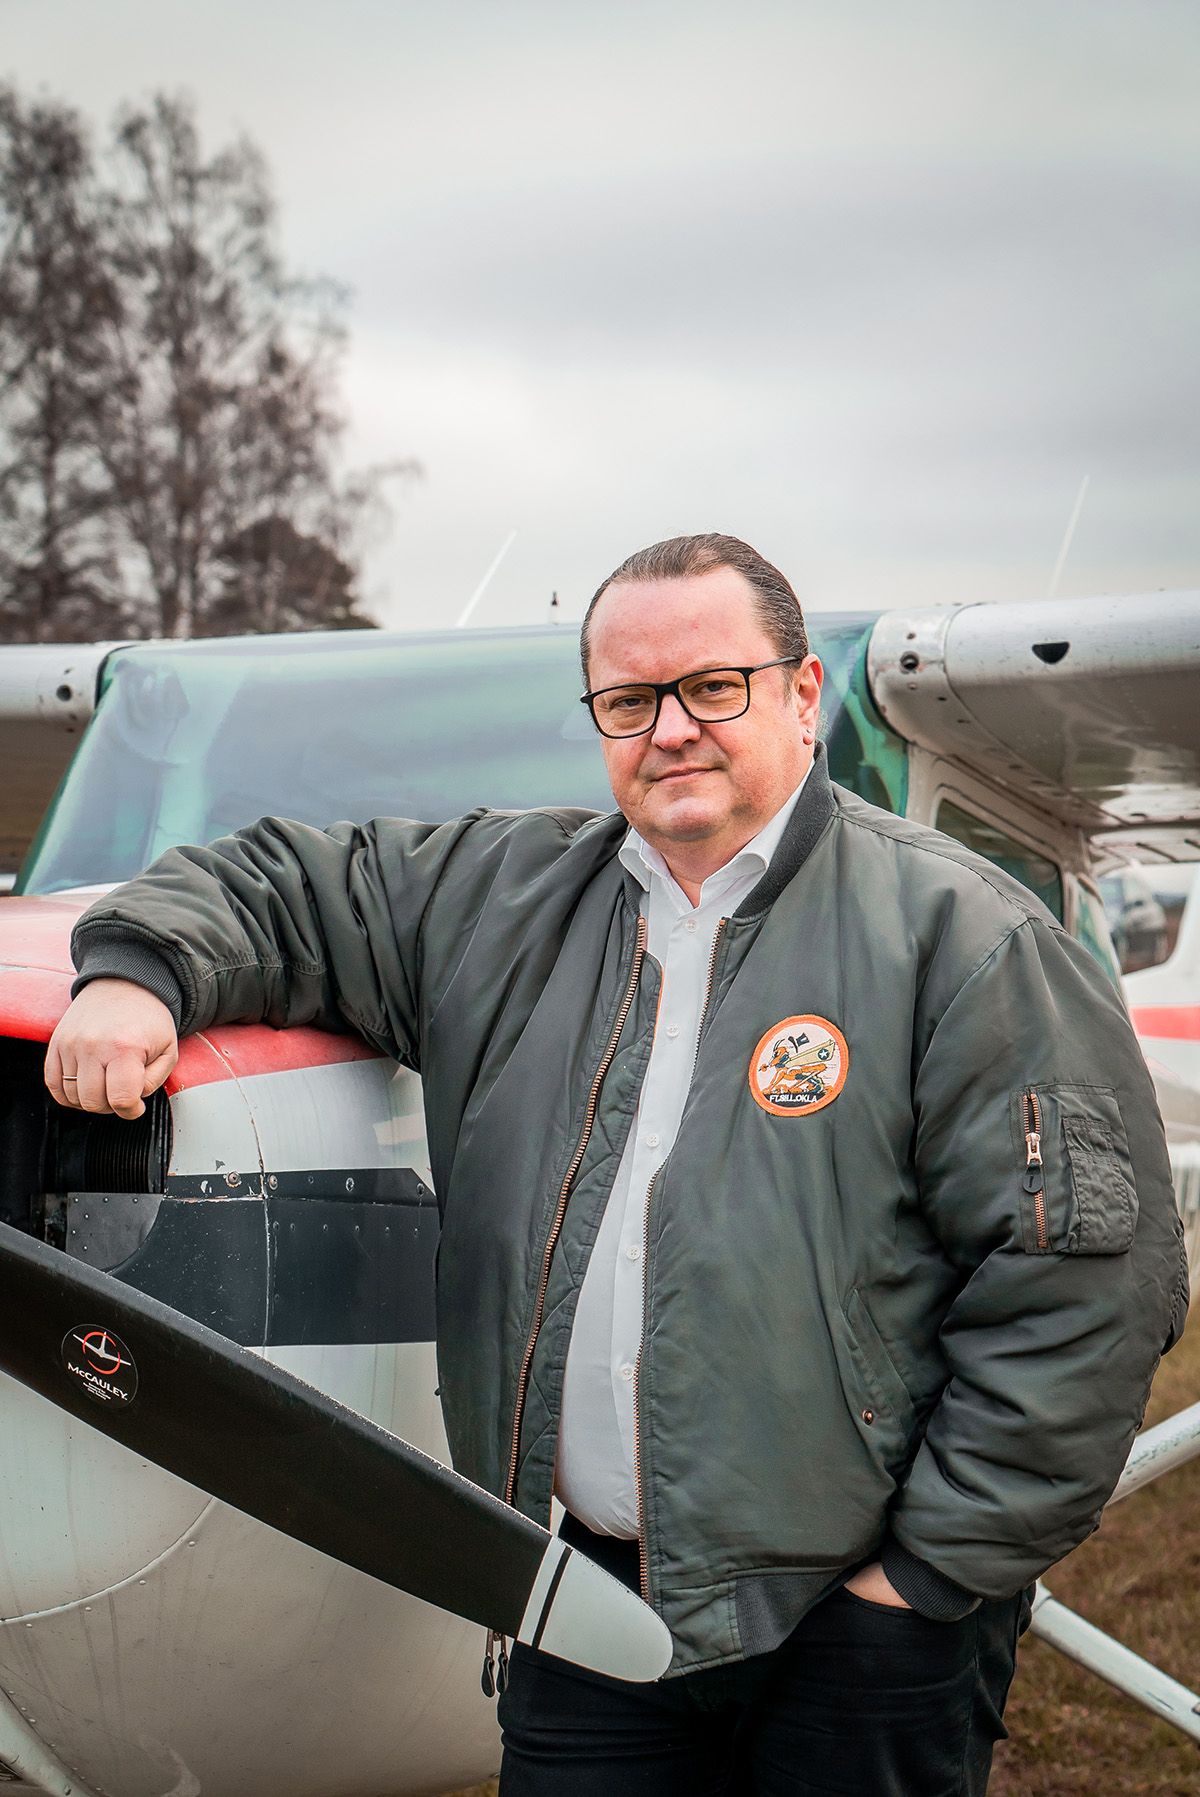 Arne H. Krumsvik står foran et småfly på Kjeller flyplass utenfor Oslo. Han har på seg en mørkegrønn bomberjakke. Han har den ene armen over snuten på miniflyet. Bildet viser et nærbilde av han. 